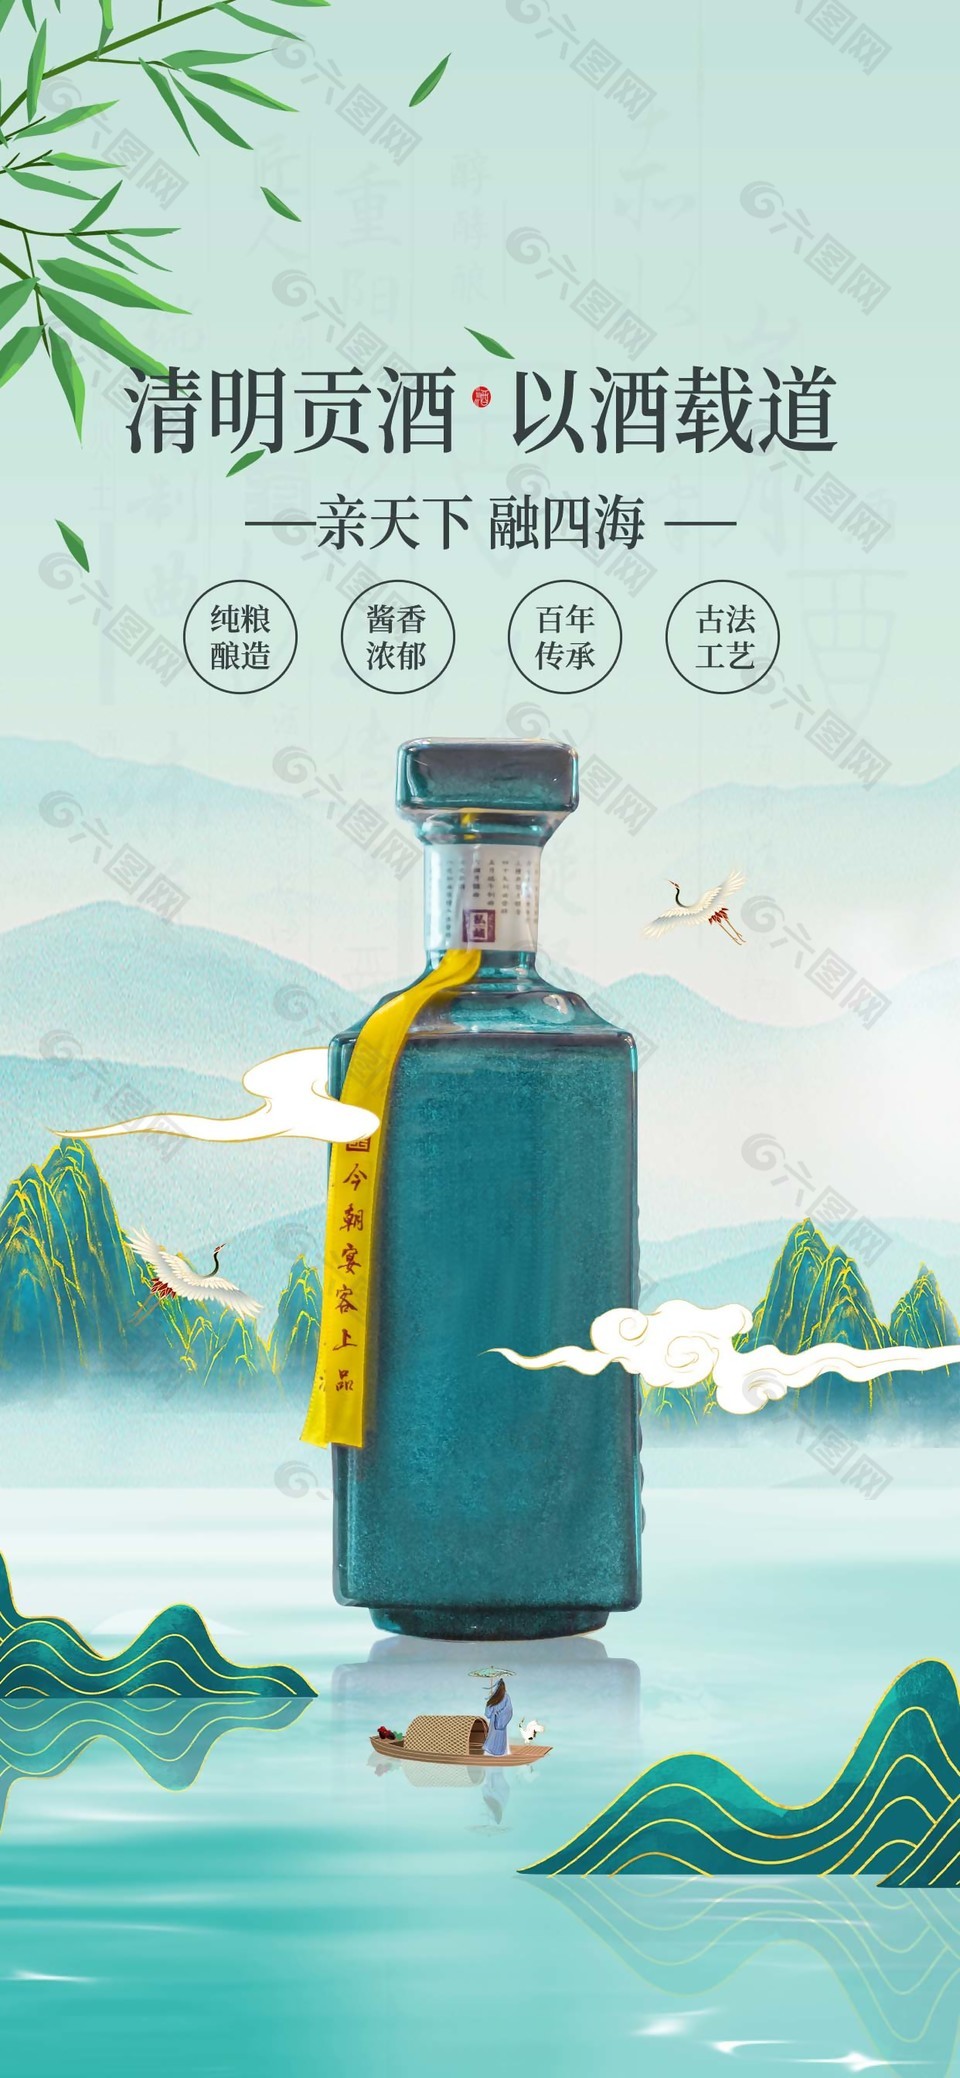 国潮风清明贡酒宣传海报设计素材